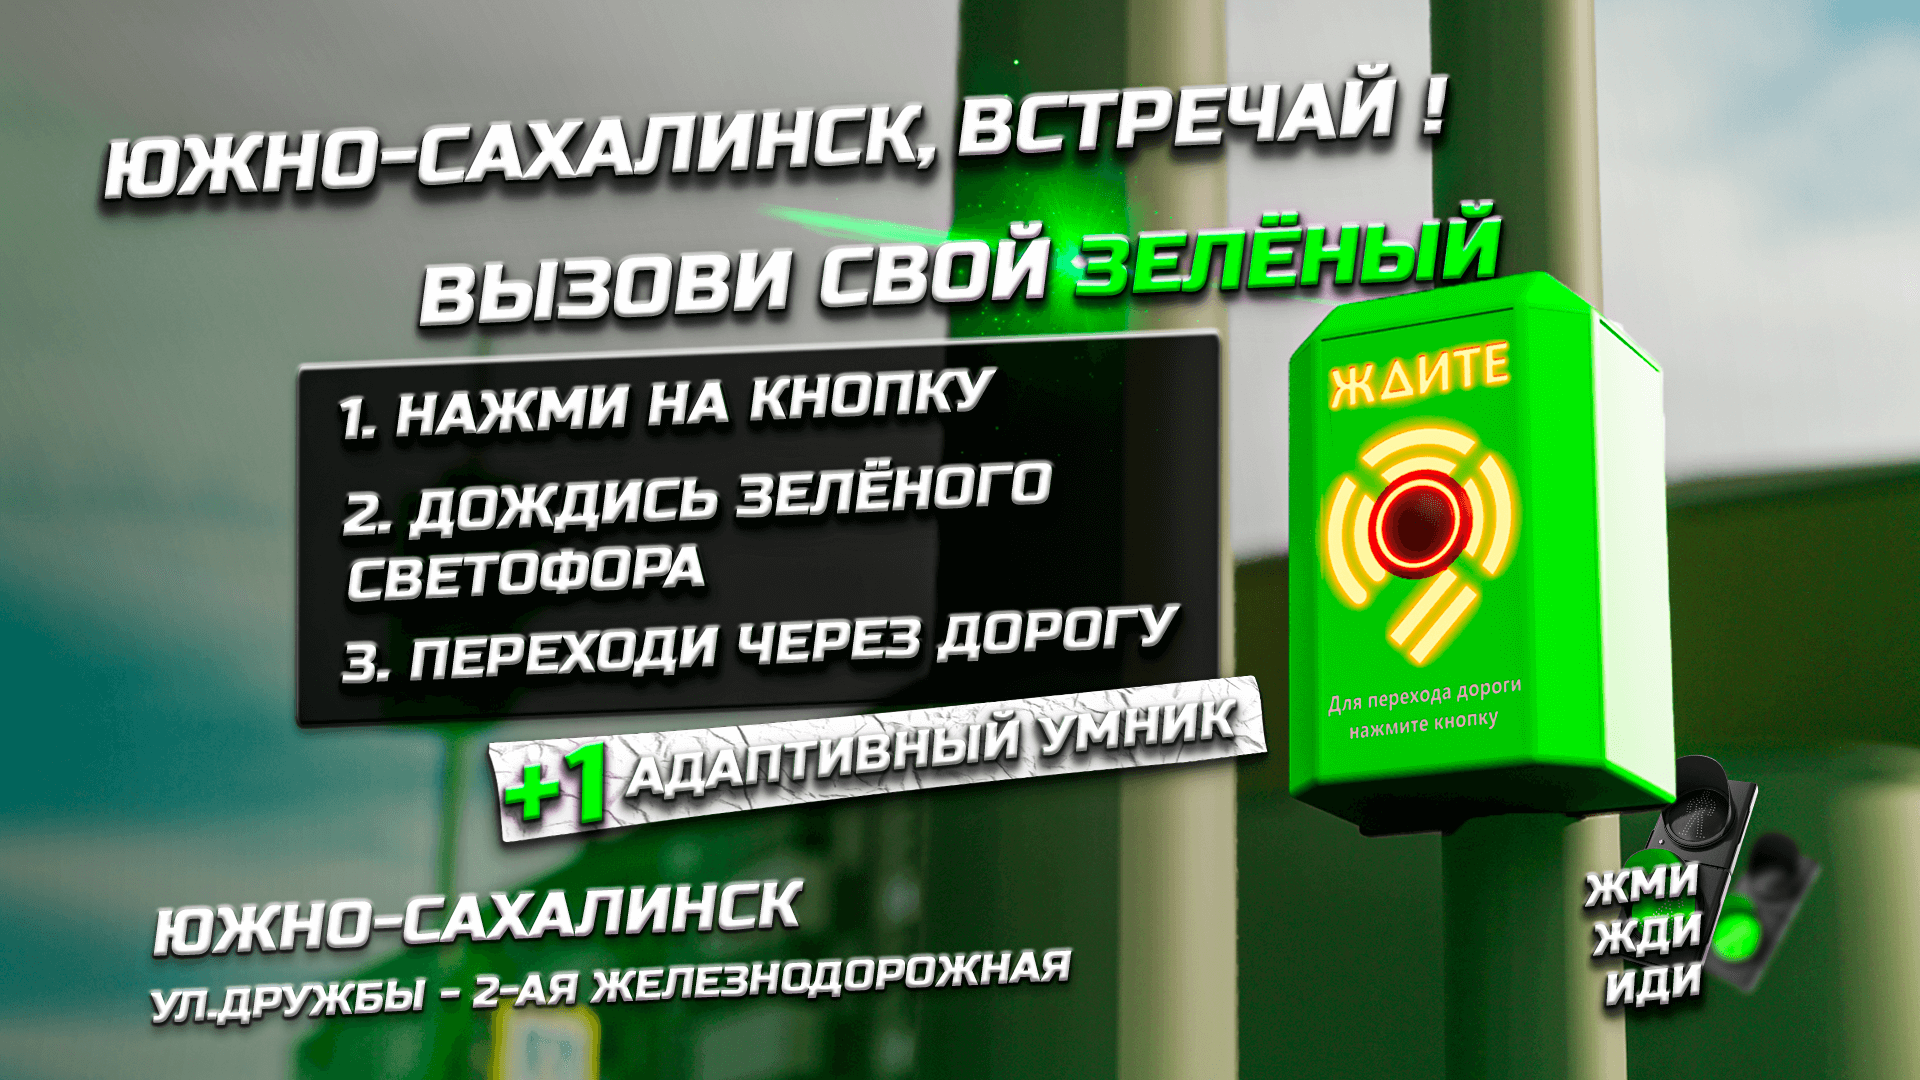 Южно-Сахалинск, встречай +1 адаптивный умник! Вызывная пешеходная фаза.